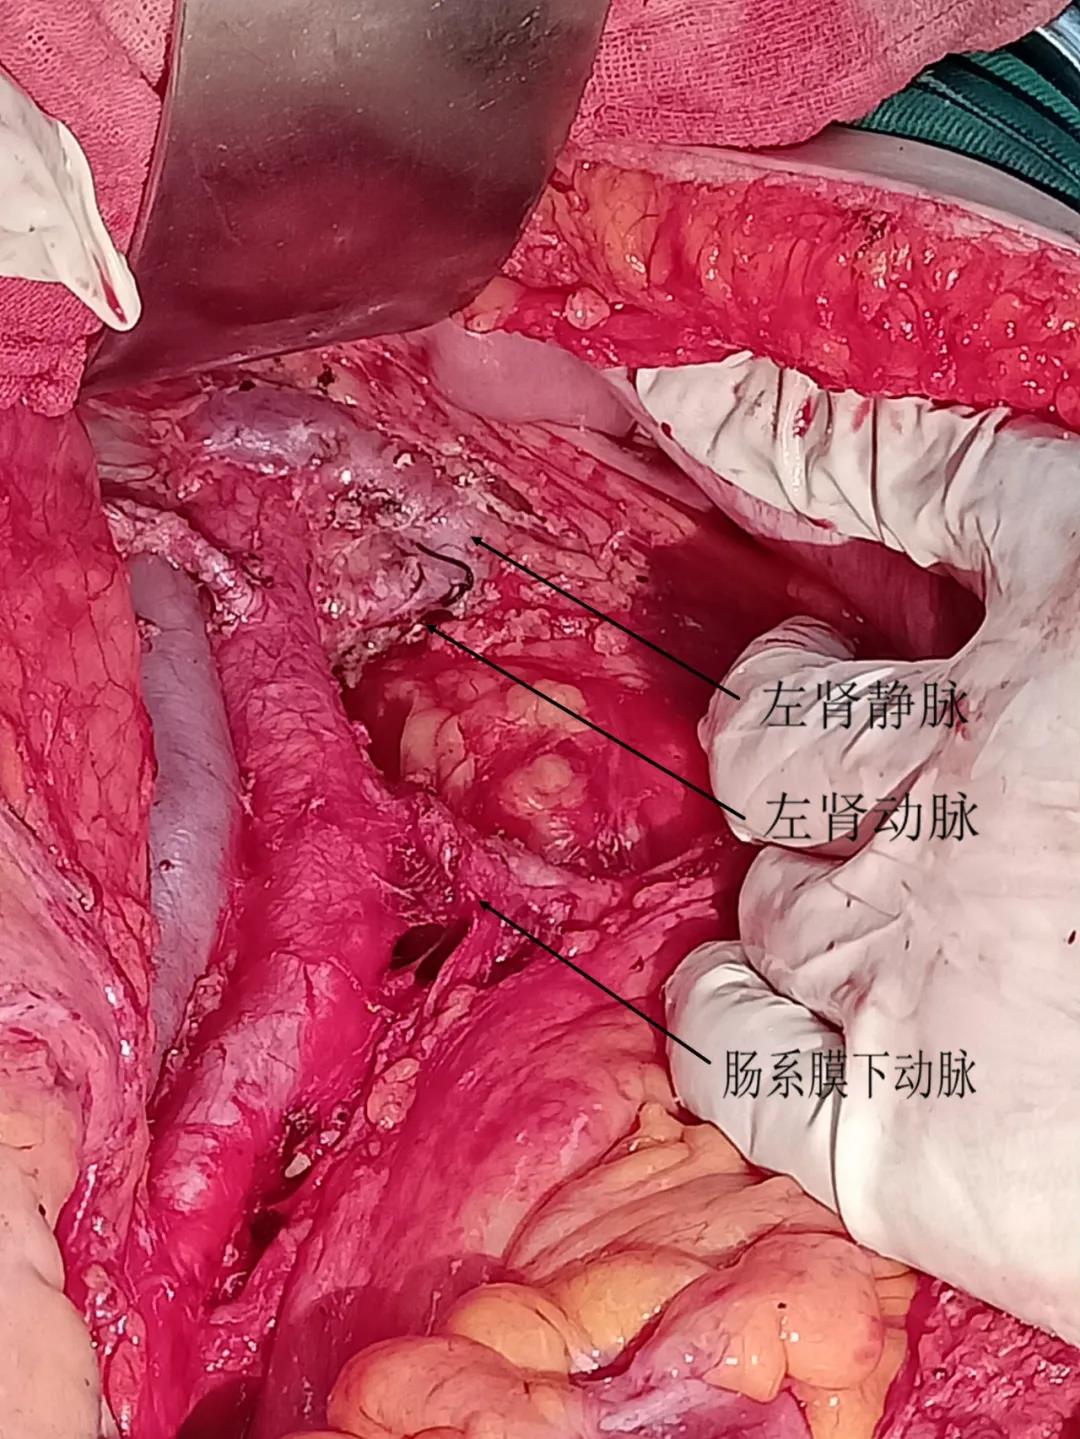 肾部分切除术英文图片